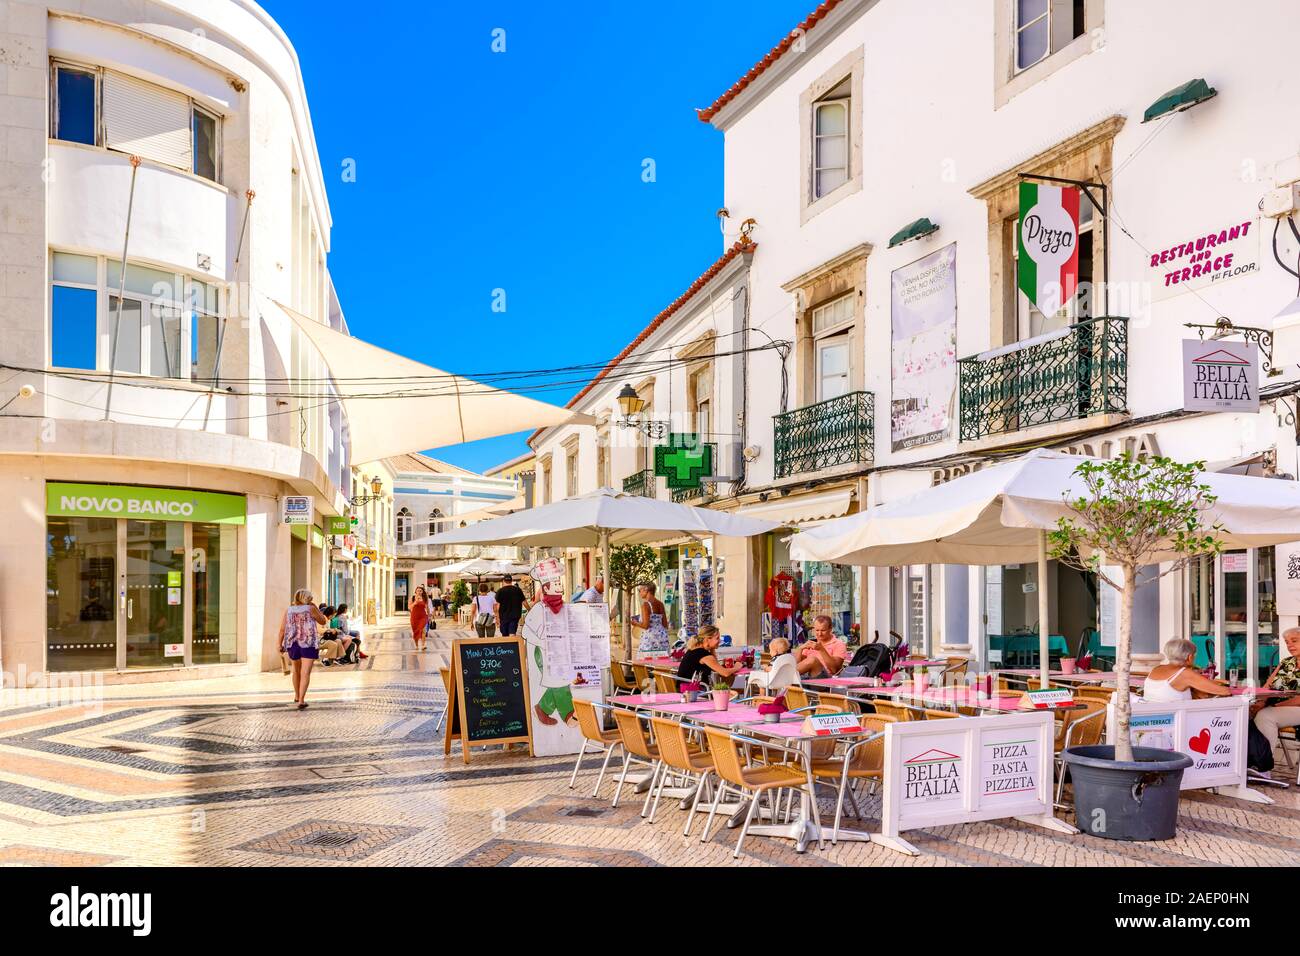 Restaurant en plein air dans la rue pavée de galets traditionnels portugais, calcada, le centre commercial Faro, l'Algarve de l'est Portugal. Banque D'Images